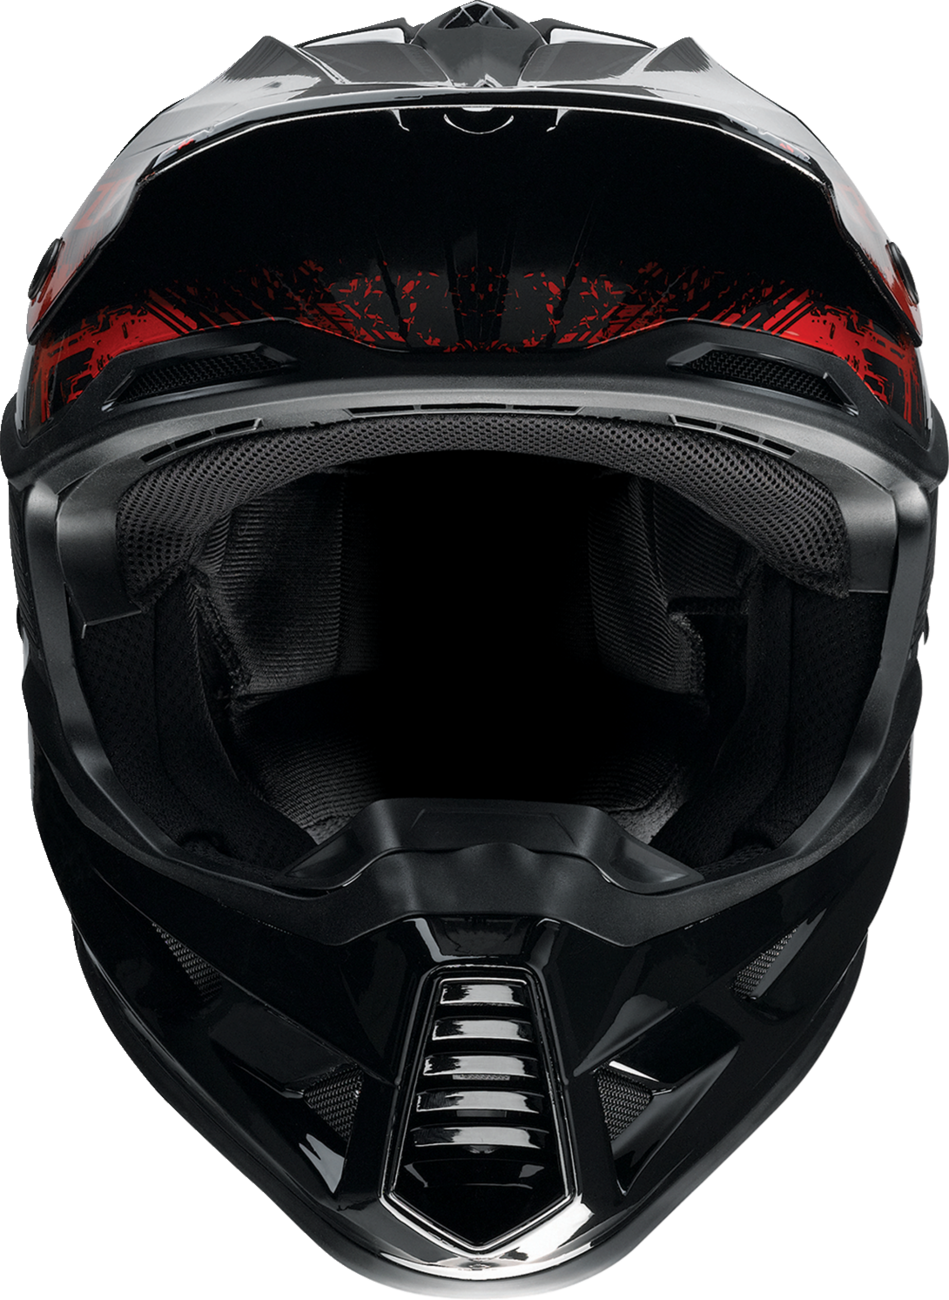 Z1R F.I. Helmet - Fractal - MIPS - Red - 2XL 0110-7785